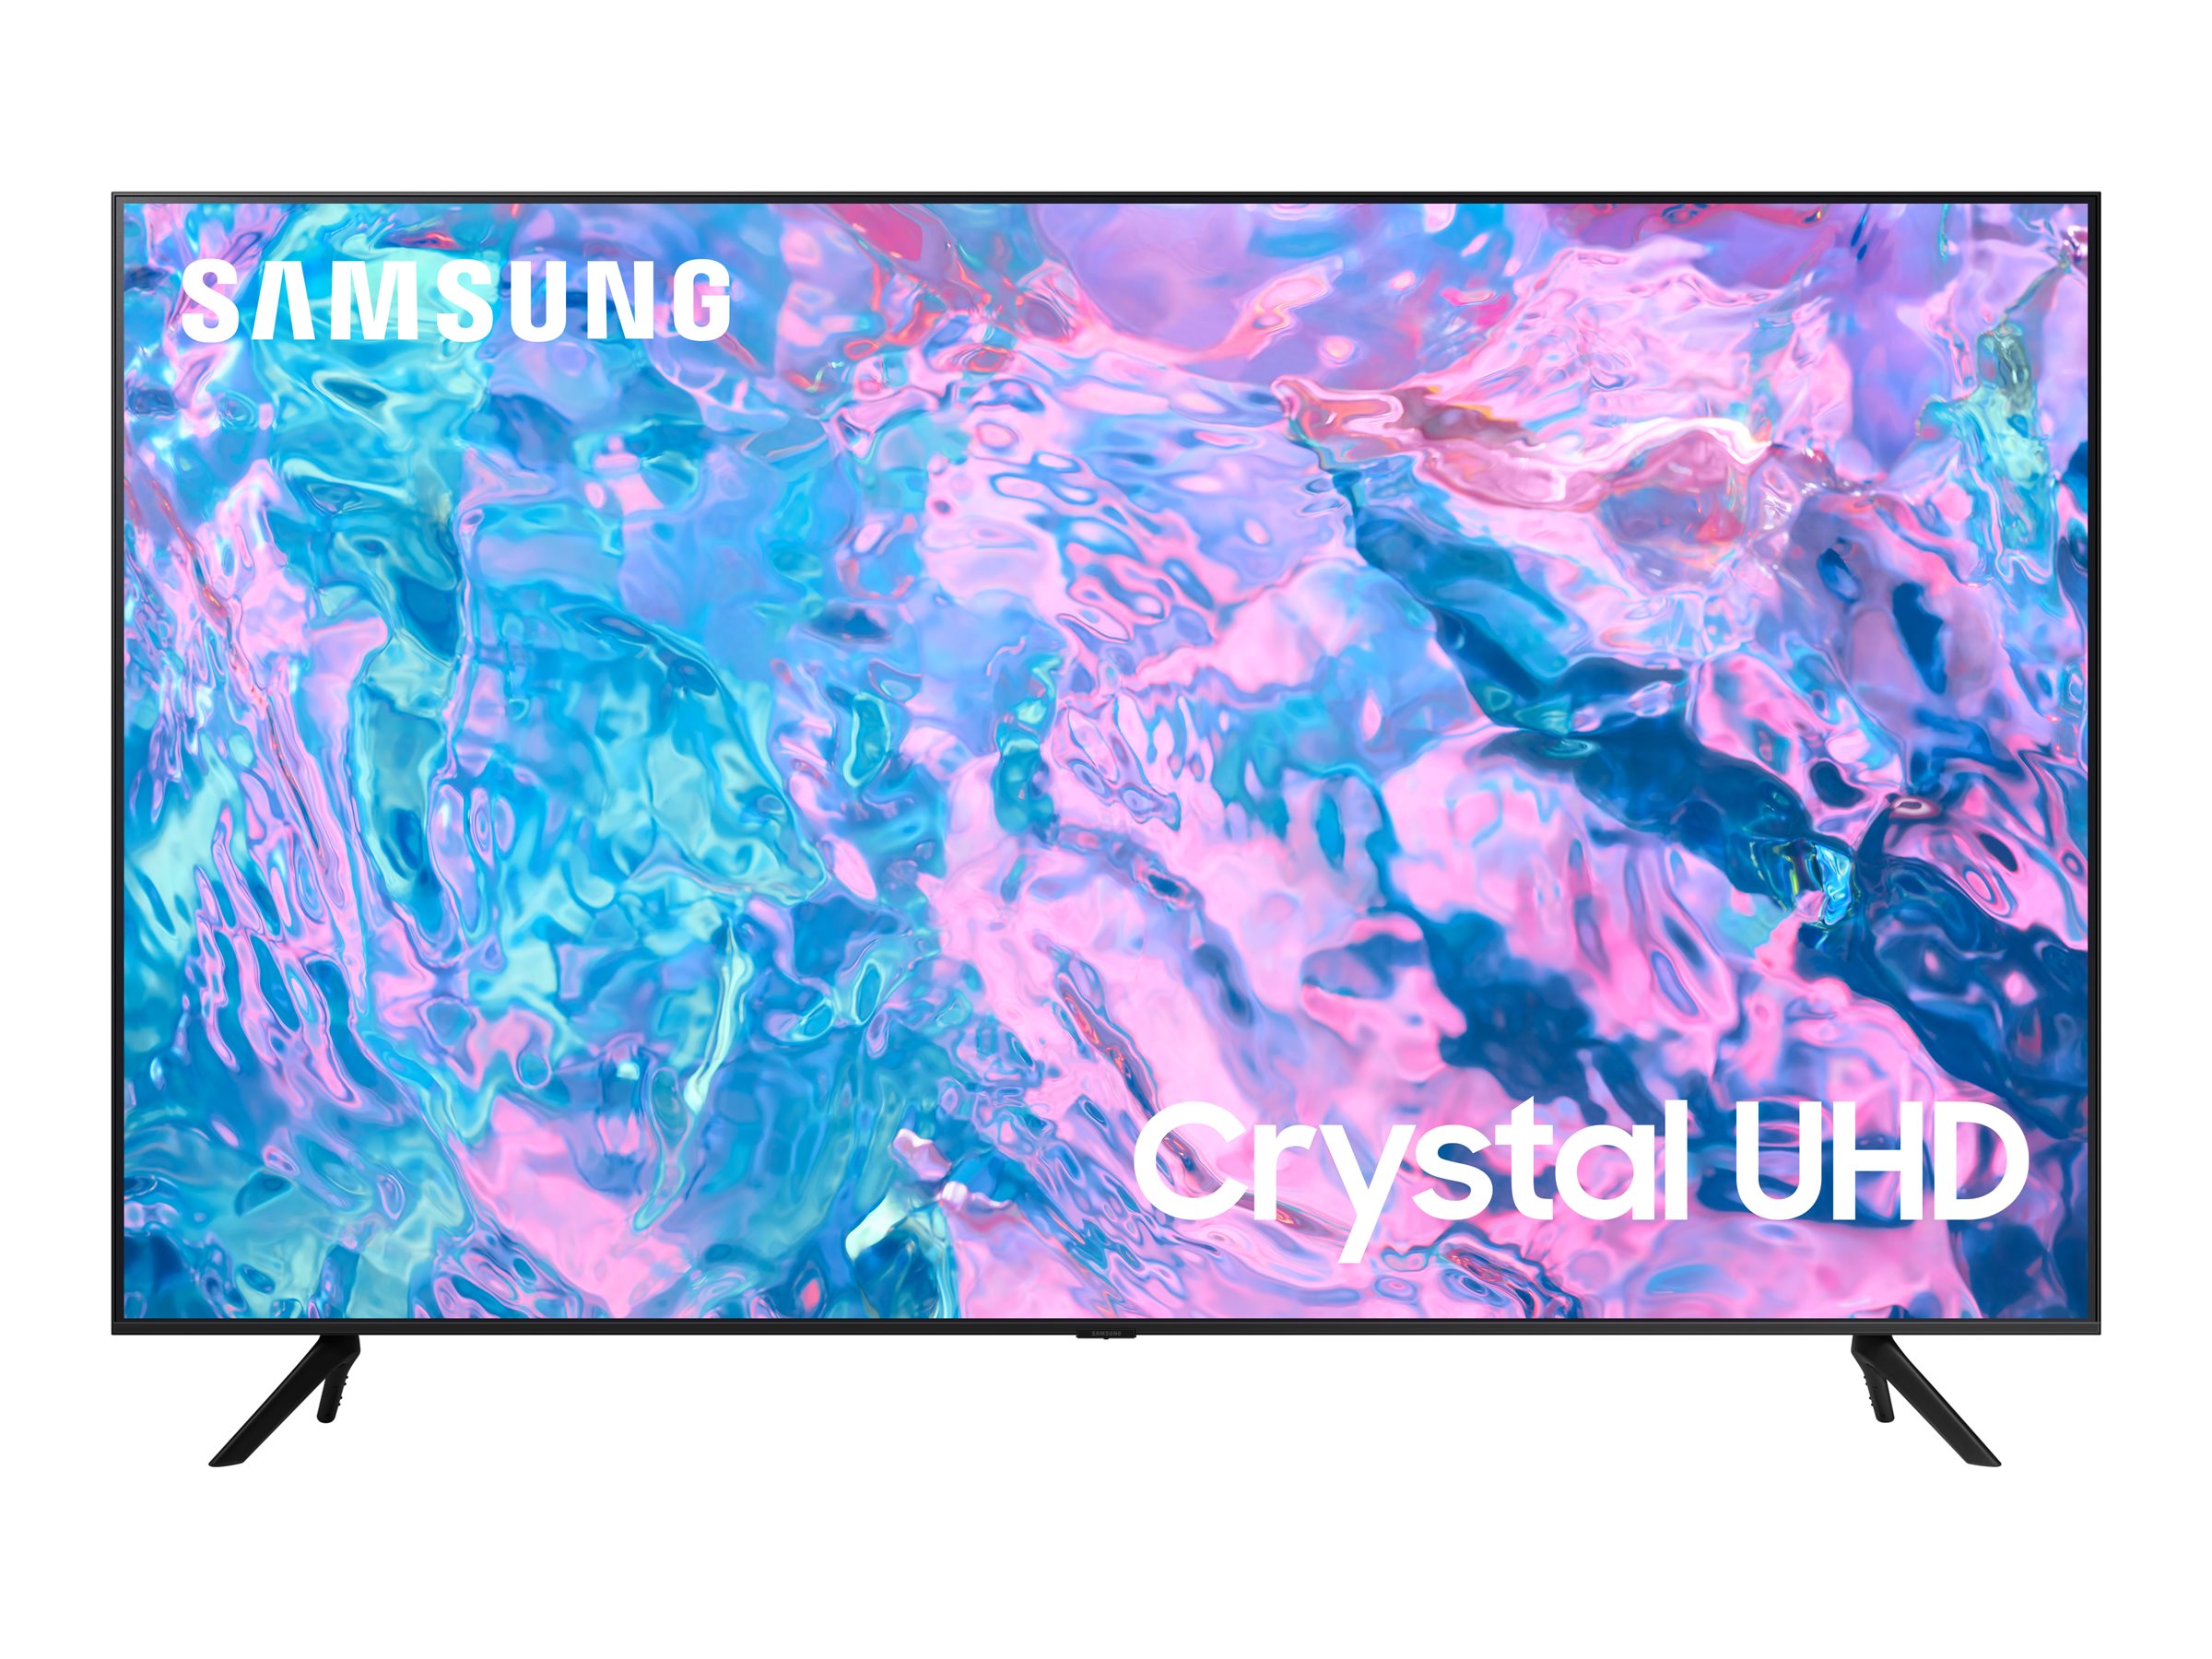 Samsung HG50CU700EU - Classe de diagonale 50" HCU7000 Series TV LCD rétro-éclairée par LED - Crystal UHD - hôtel / hospitalité - Tizen OS - 4K UHD (2160p) 3840 x 2160 - HDR - noir - HG50CU700EUXEN - Télévisions et écrans pour le secteur de l'hôtellerie